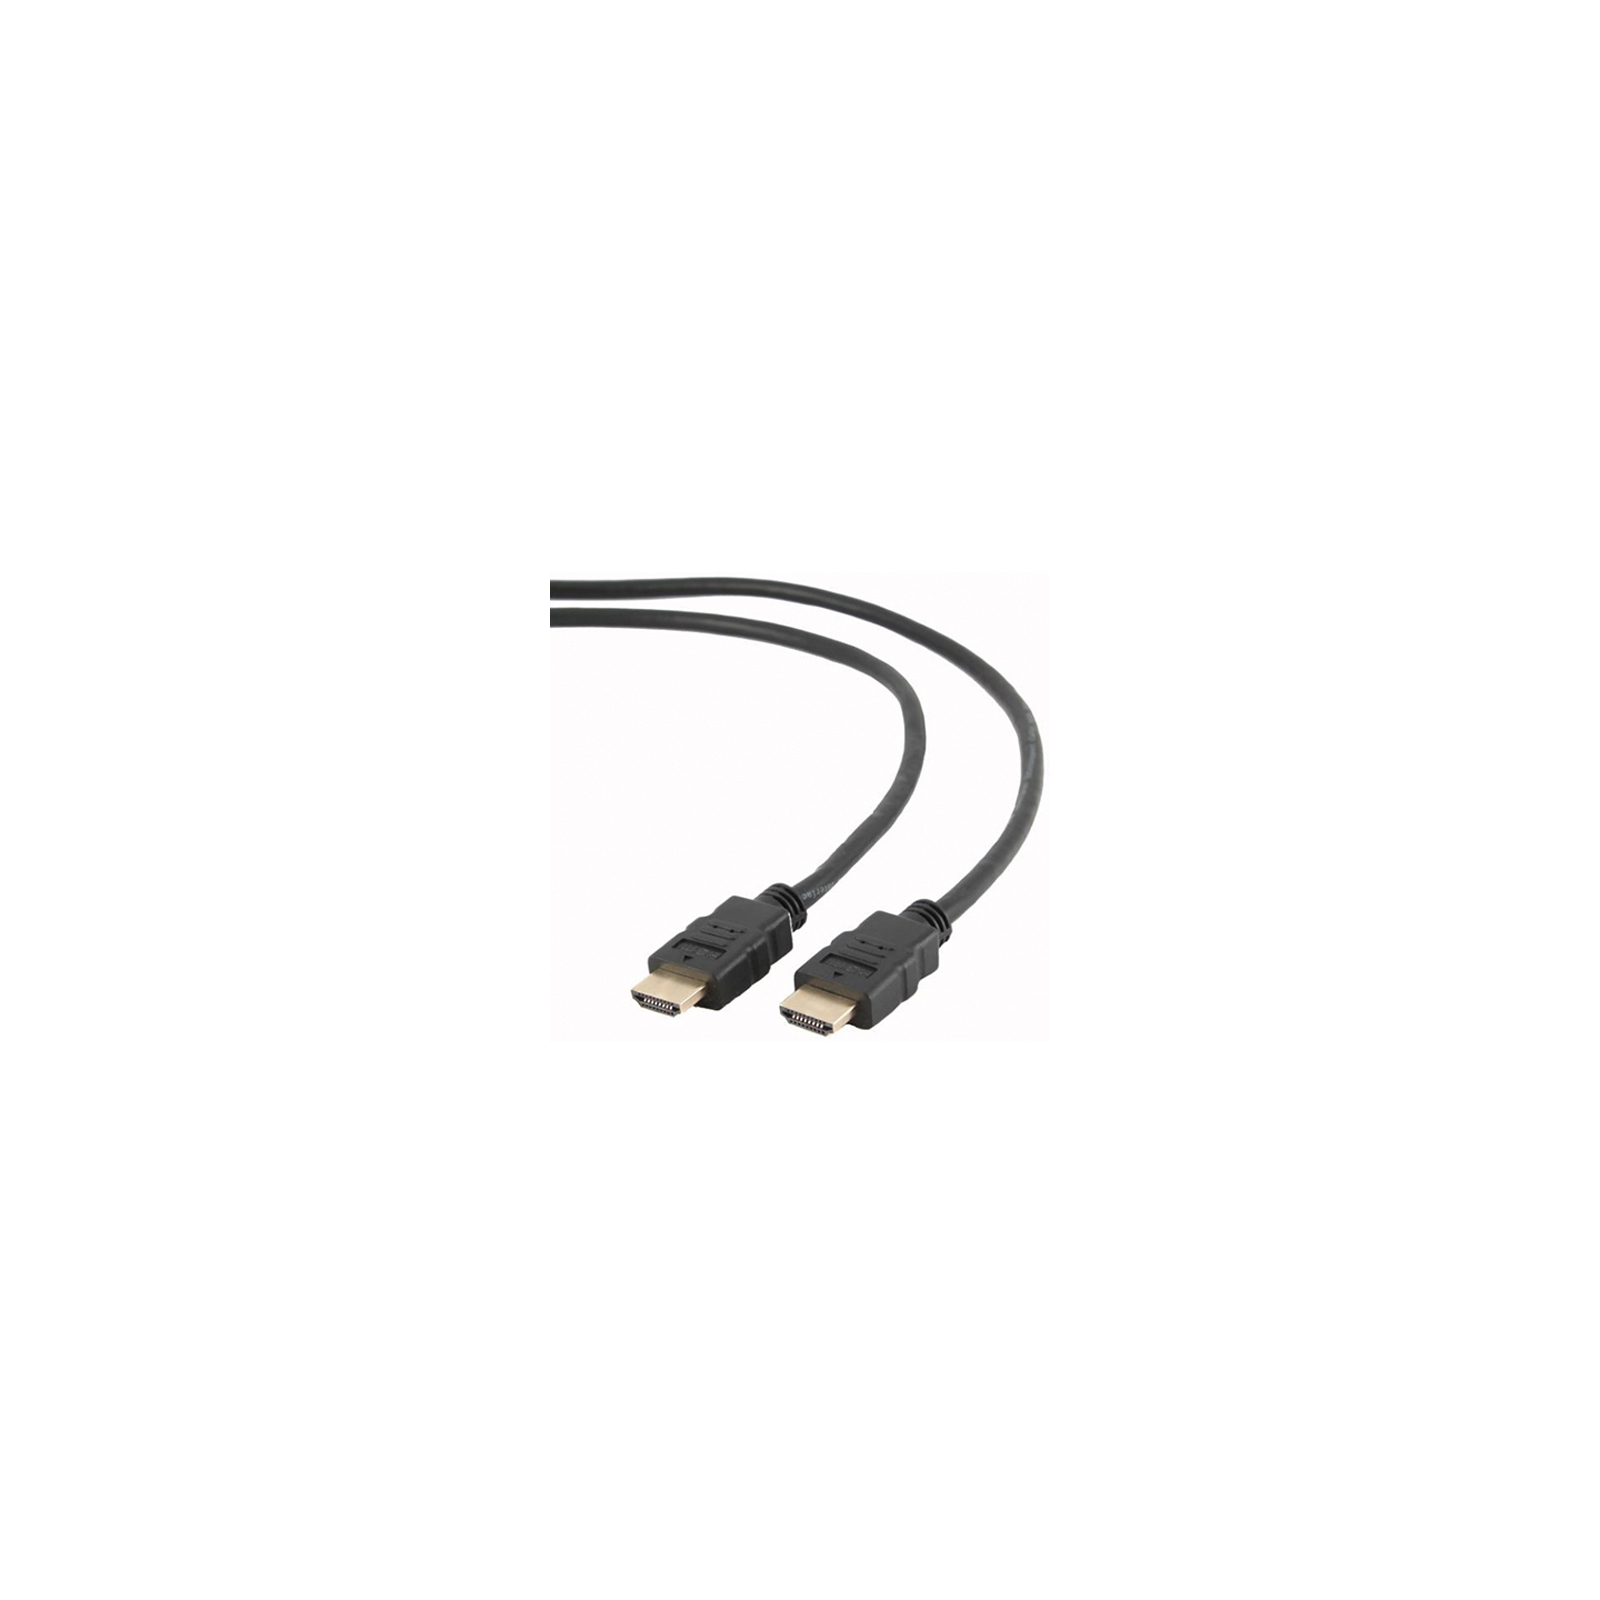 Кабель мультимедийный HDMI to HDMI 1.8m Cablexpert (CC-HDMI4-6)